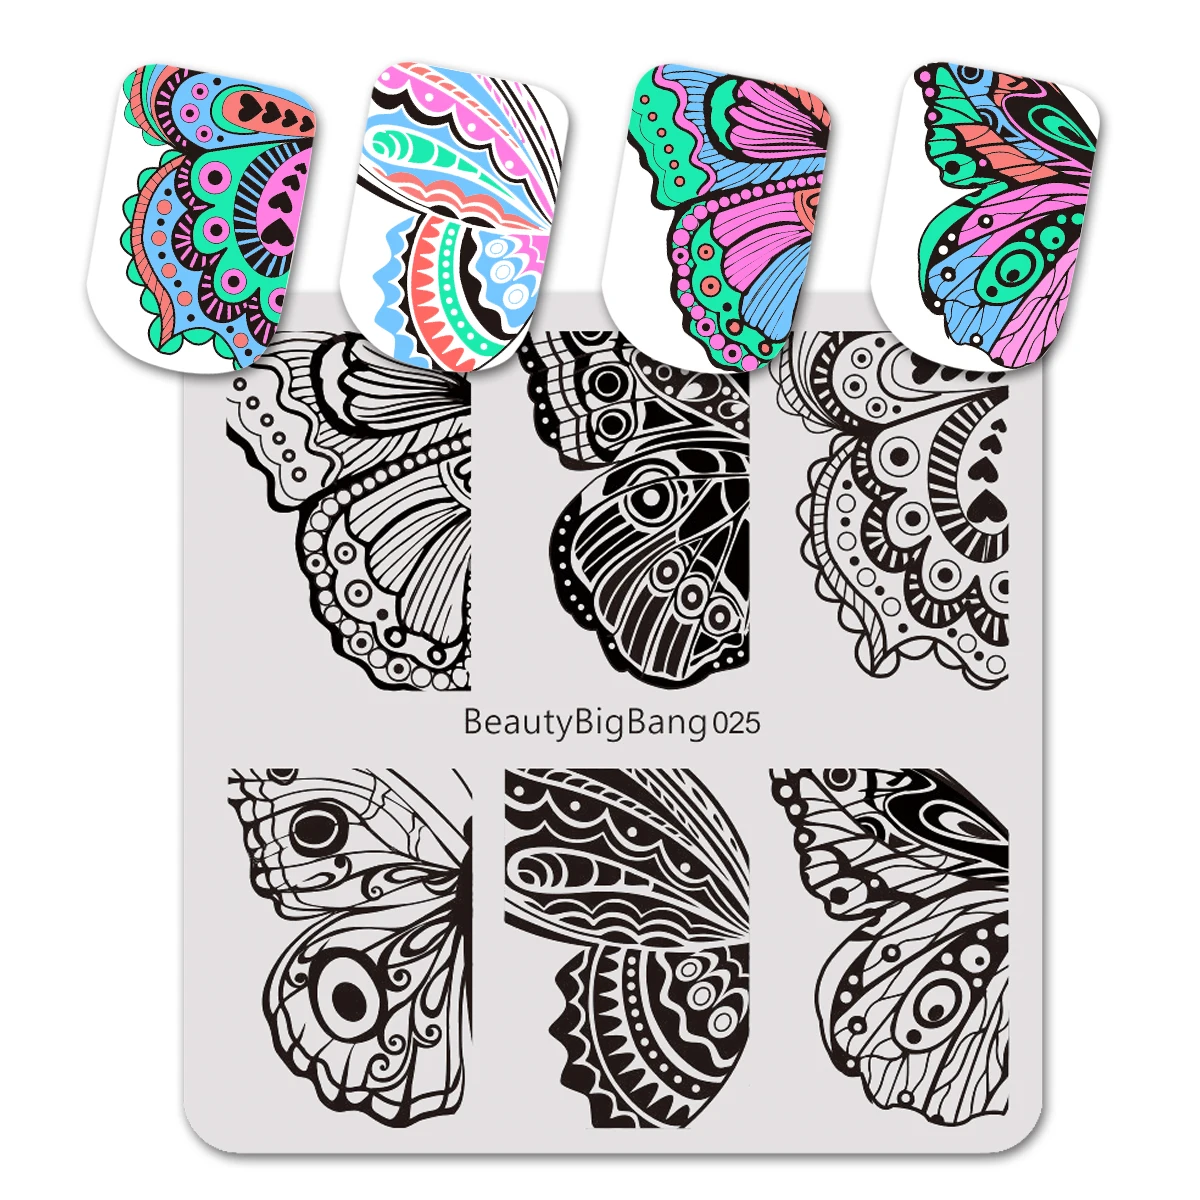 BeautyBigBang 6 см* 6 см пластины для штамповки ногтей узор крыльев бабочки дизайн ногтей штамп штамповка шаблон изображения - Цвет: Темно-синий